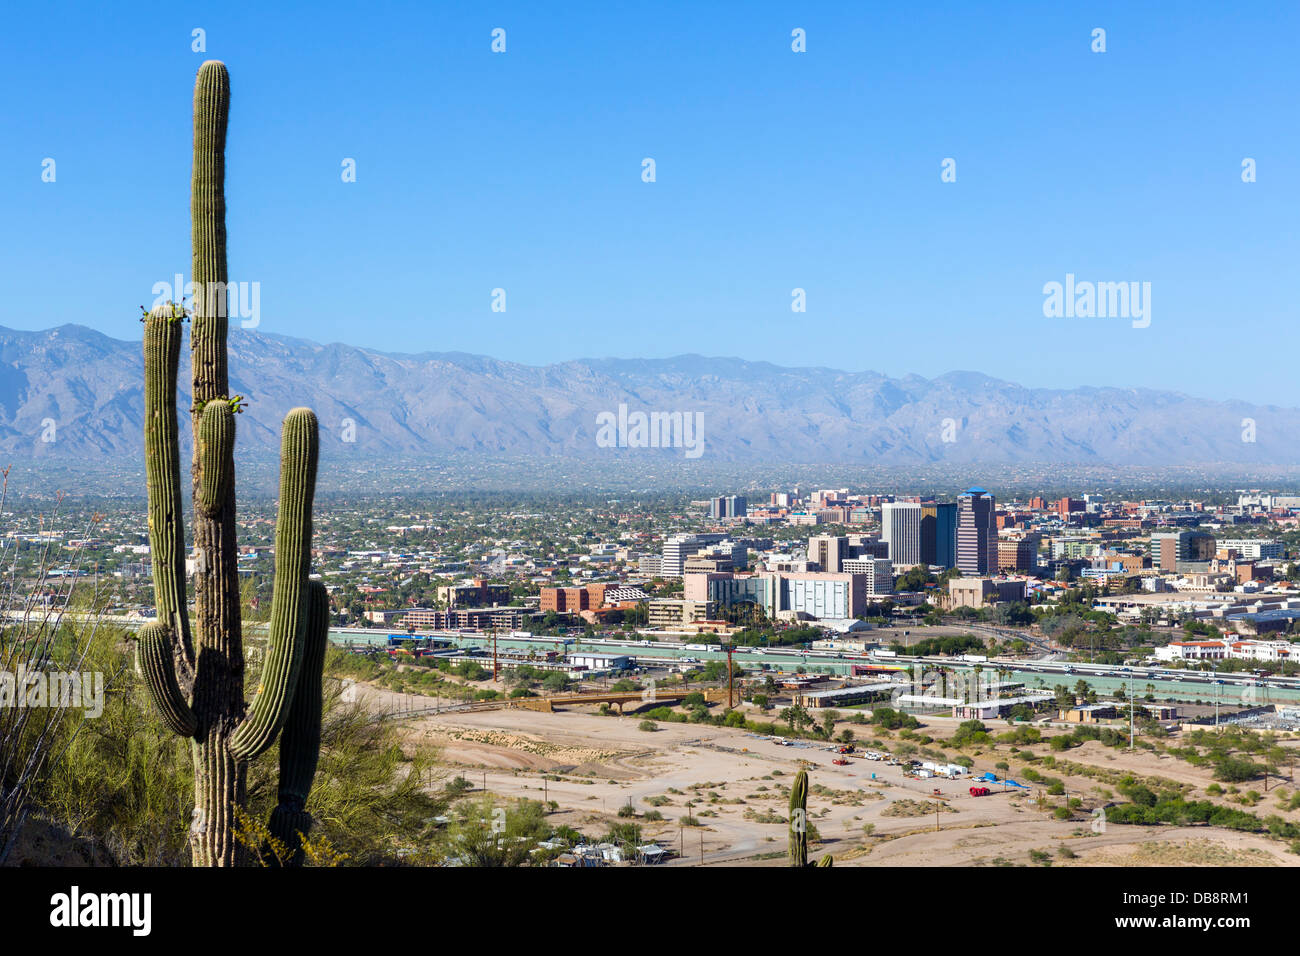 View over downtown Tucson, Arizona, USA Stock Photo